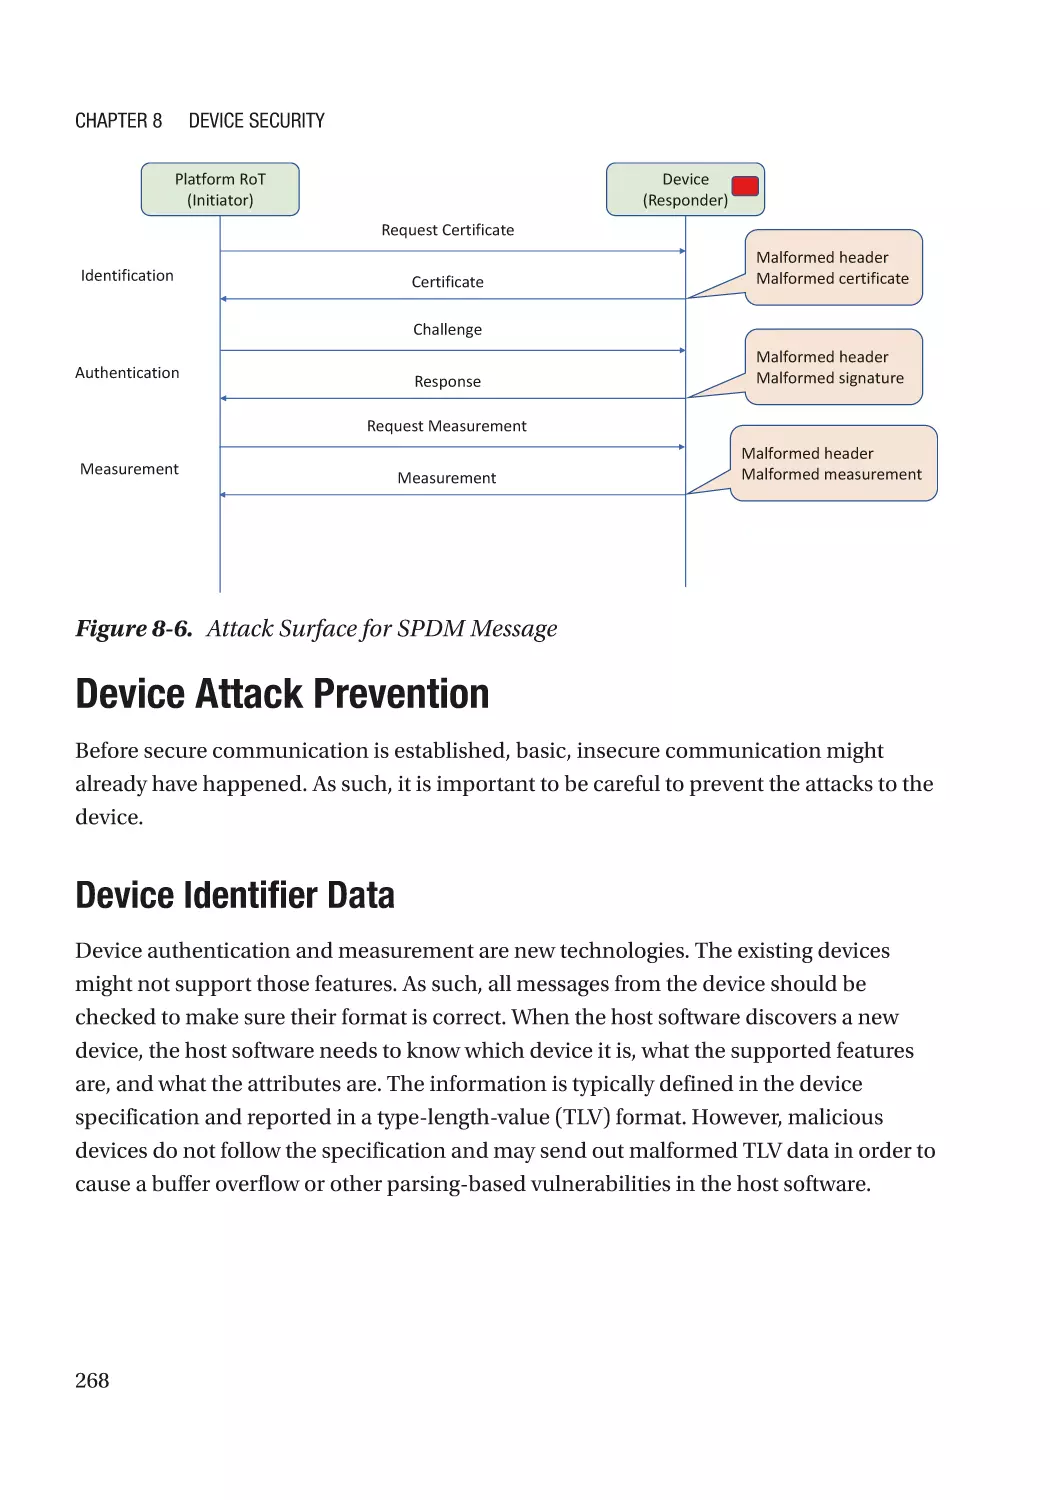 Device Attack Prevention
Device Identifier Data